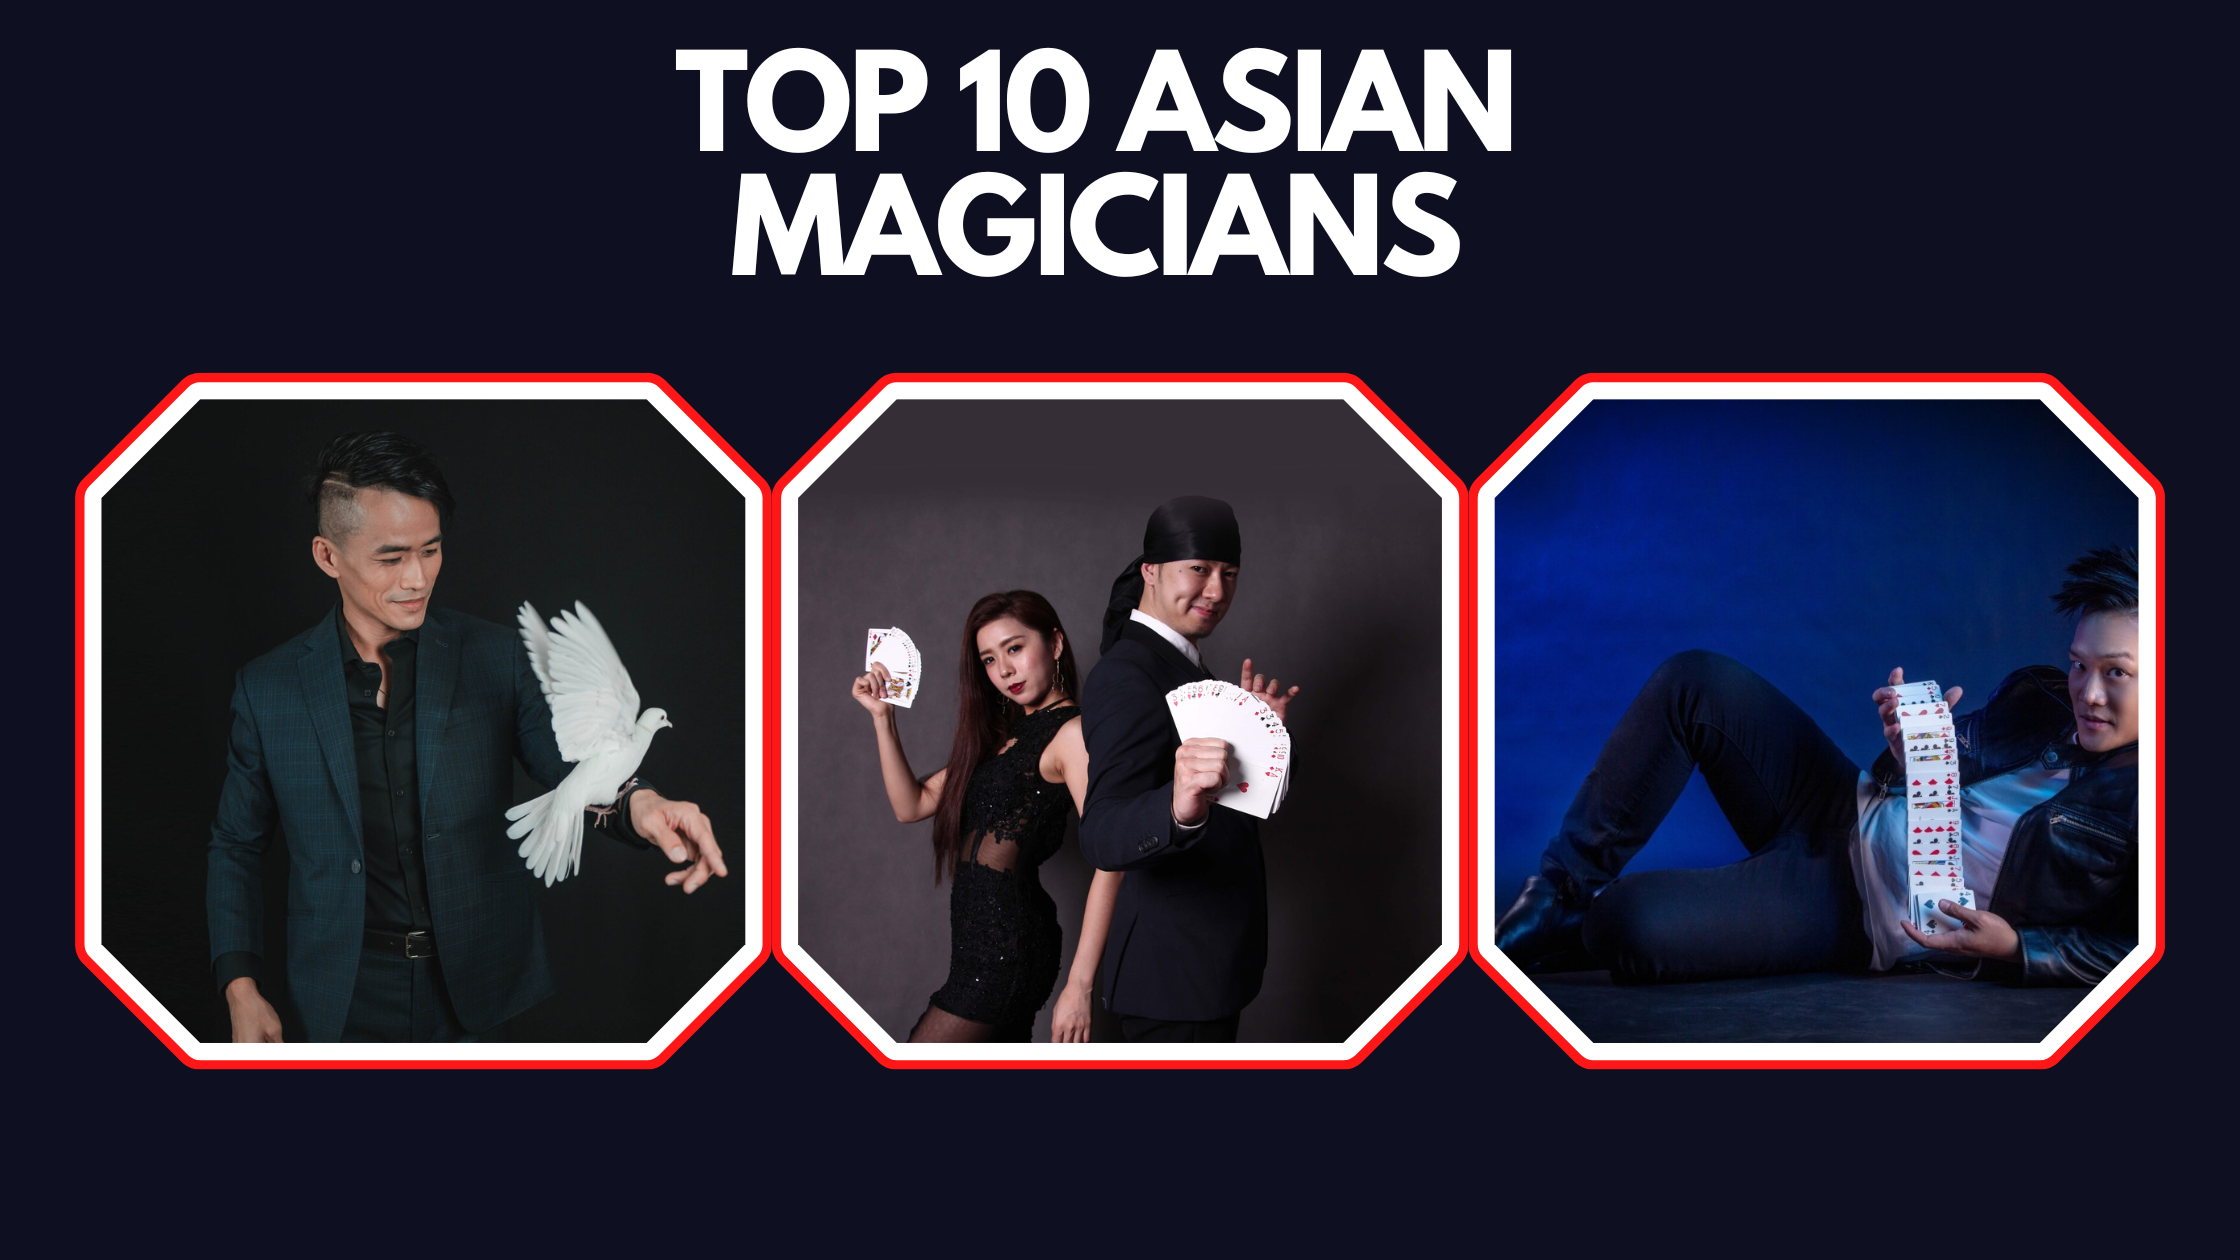 Top 10 Asian Magicians